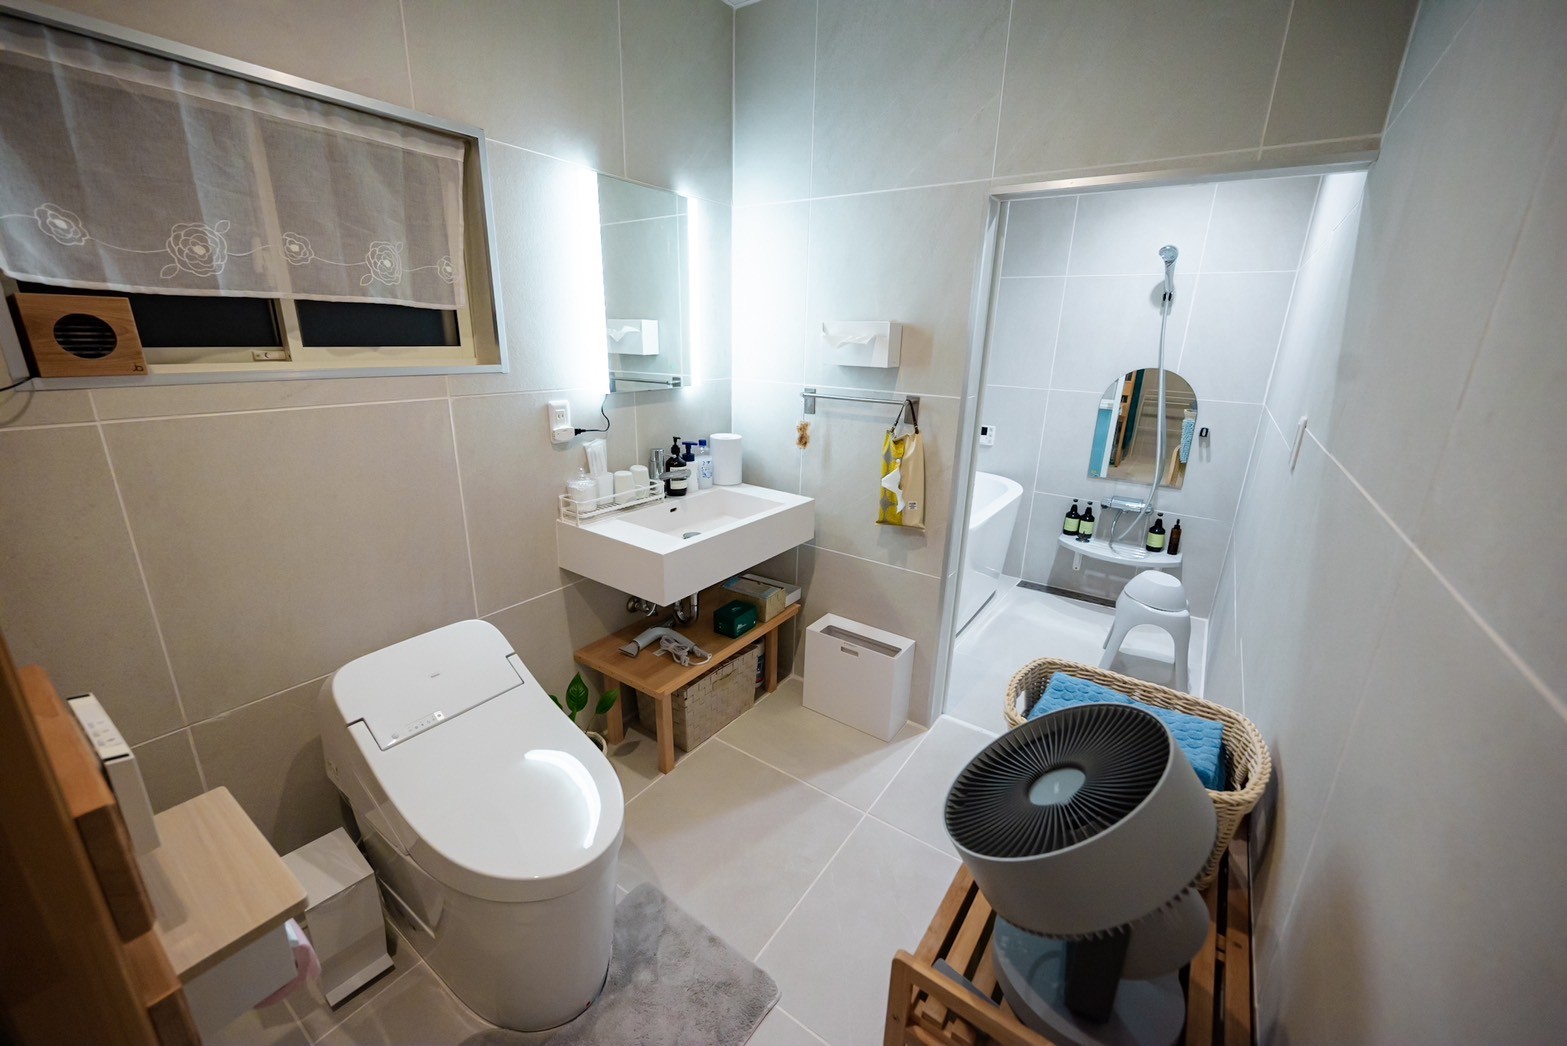 バス・洗面台・トイレは、白とグレーで統一しており、清潔な空間となっております。